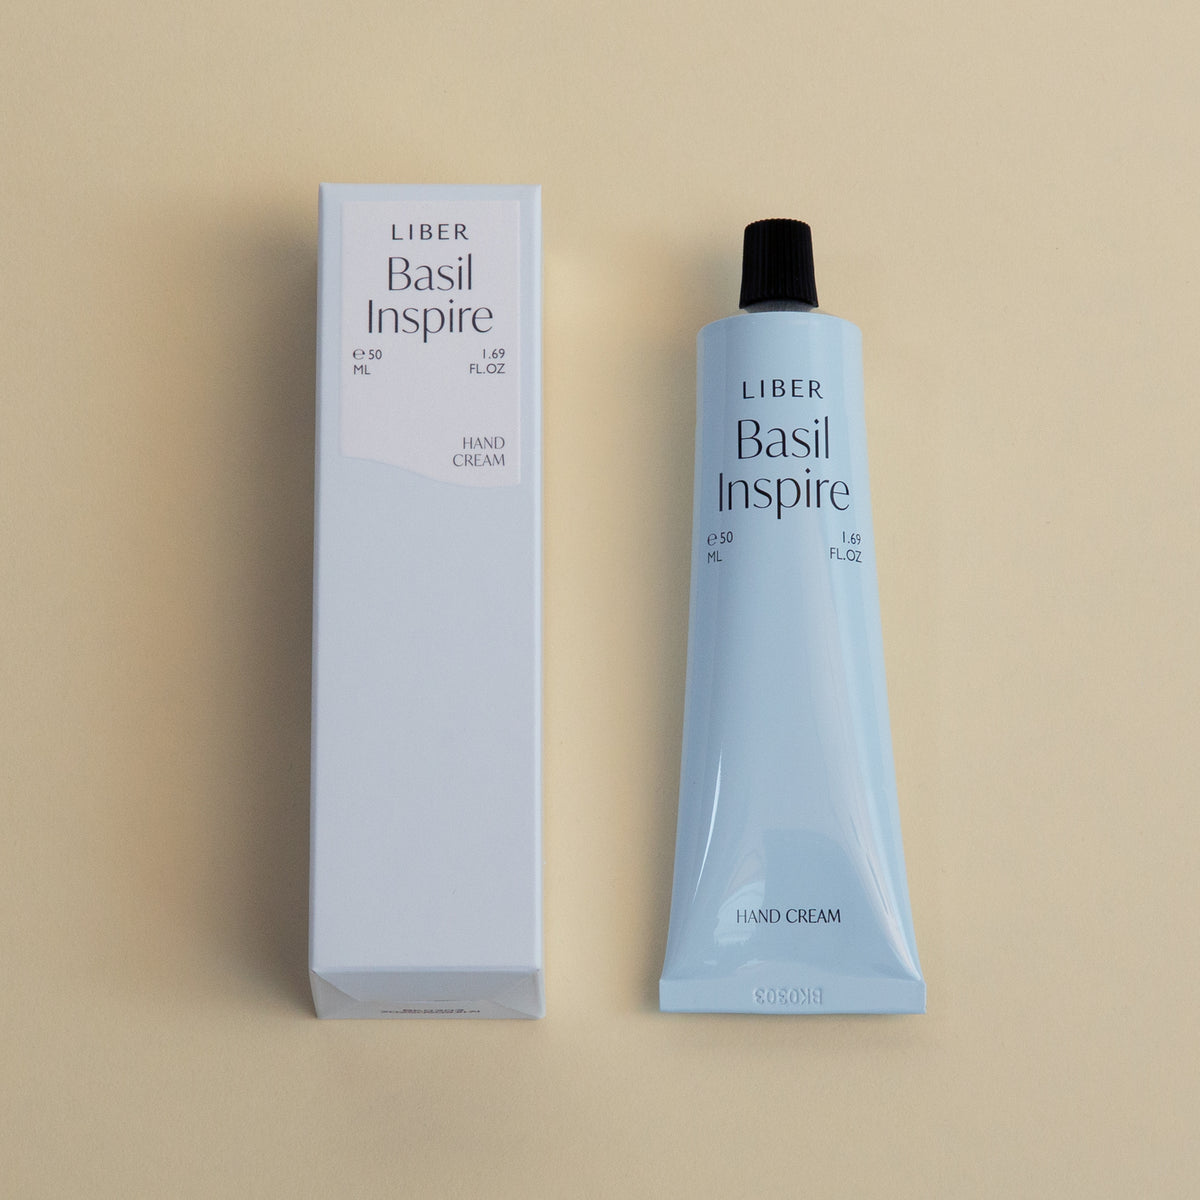 Hand Cream - Basil Inspire